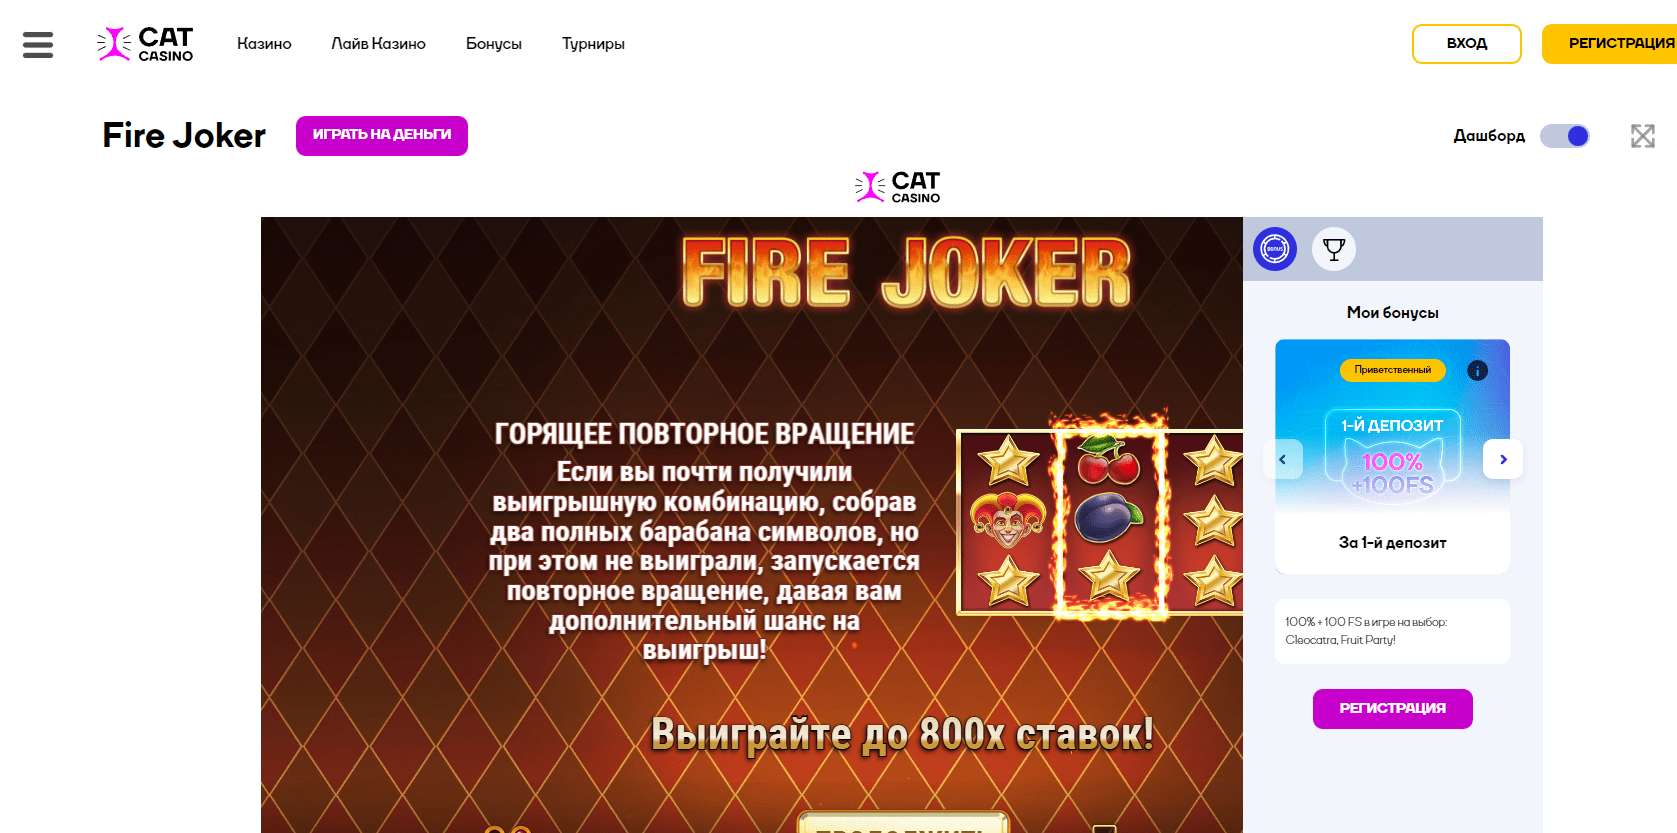 Fire joker online at Cat casino